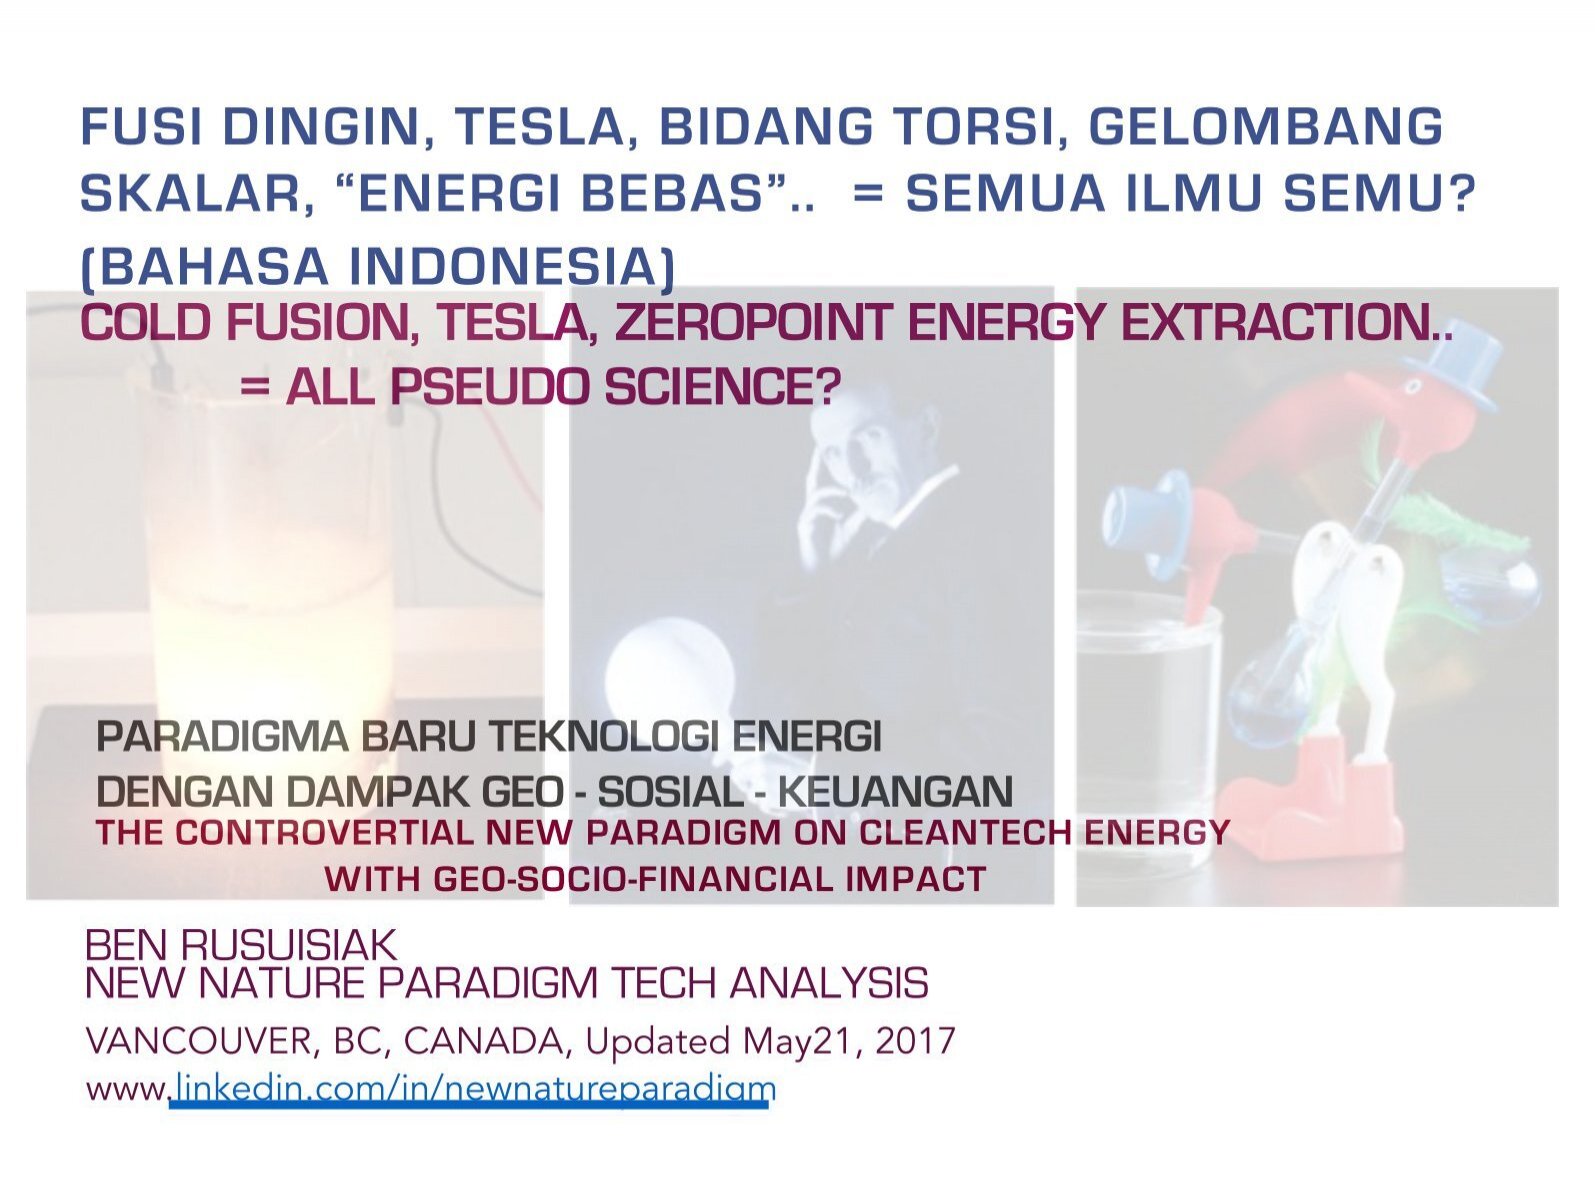 Fusi Dingin Tesla Bidang Torsi Gelombang Skalar Energi Bebas Semua Ilmu Semu Bahasa Indonesia Cold Fusion Free Energy Pseudo Science